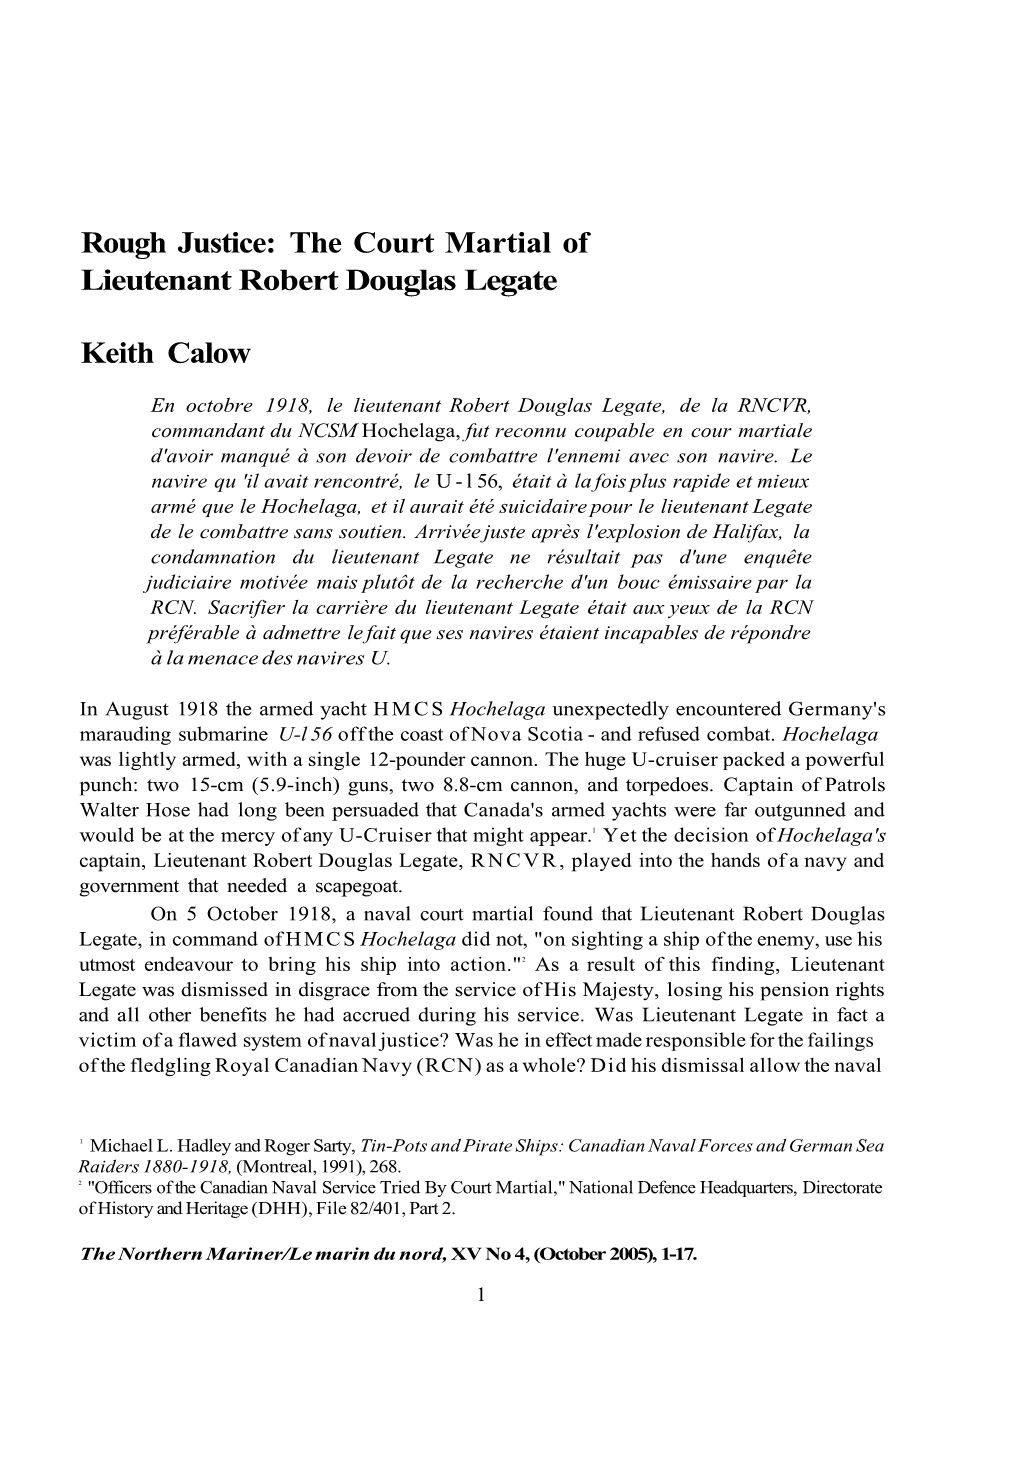 Rough Justice: the Court Martial of Lieutenant Robert Douglas Legate